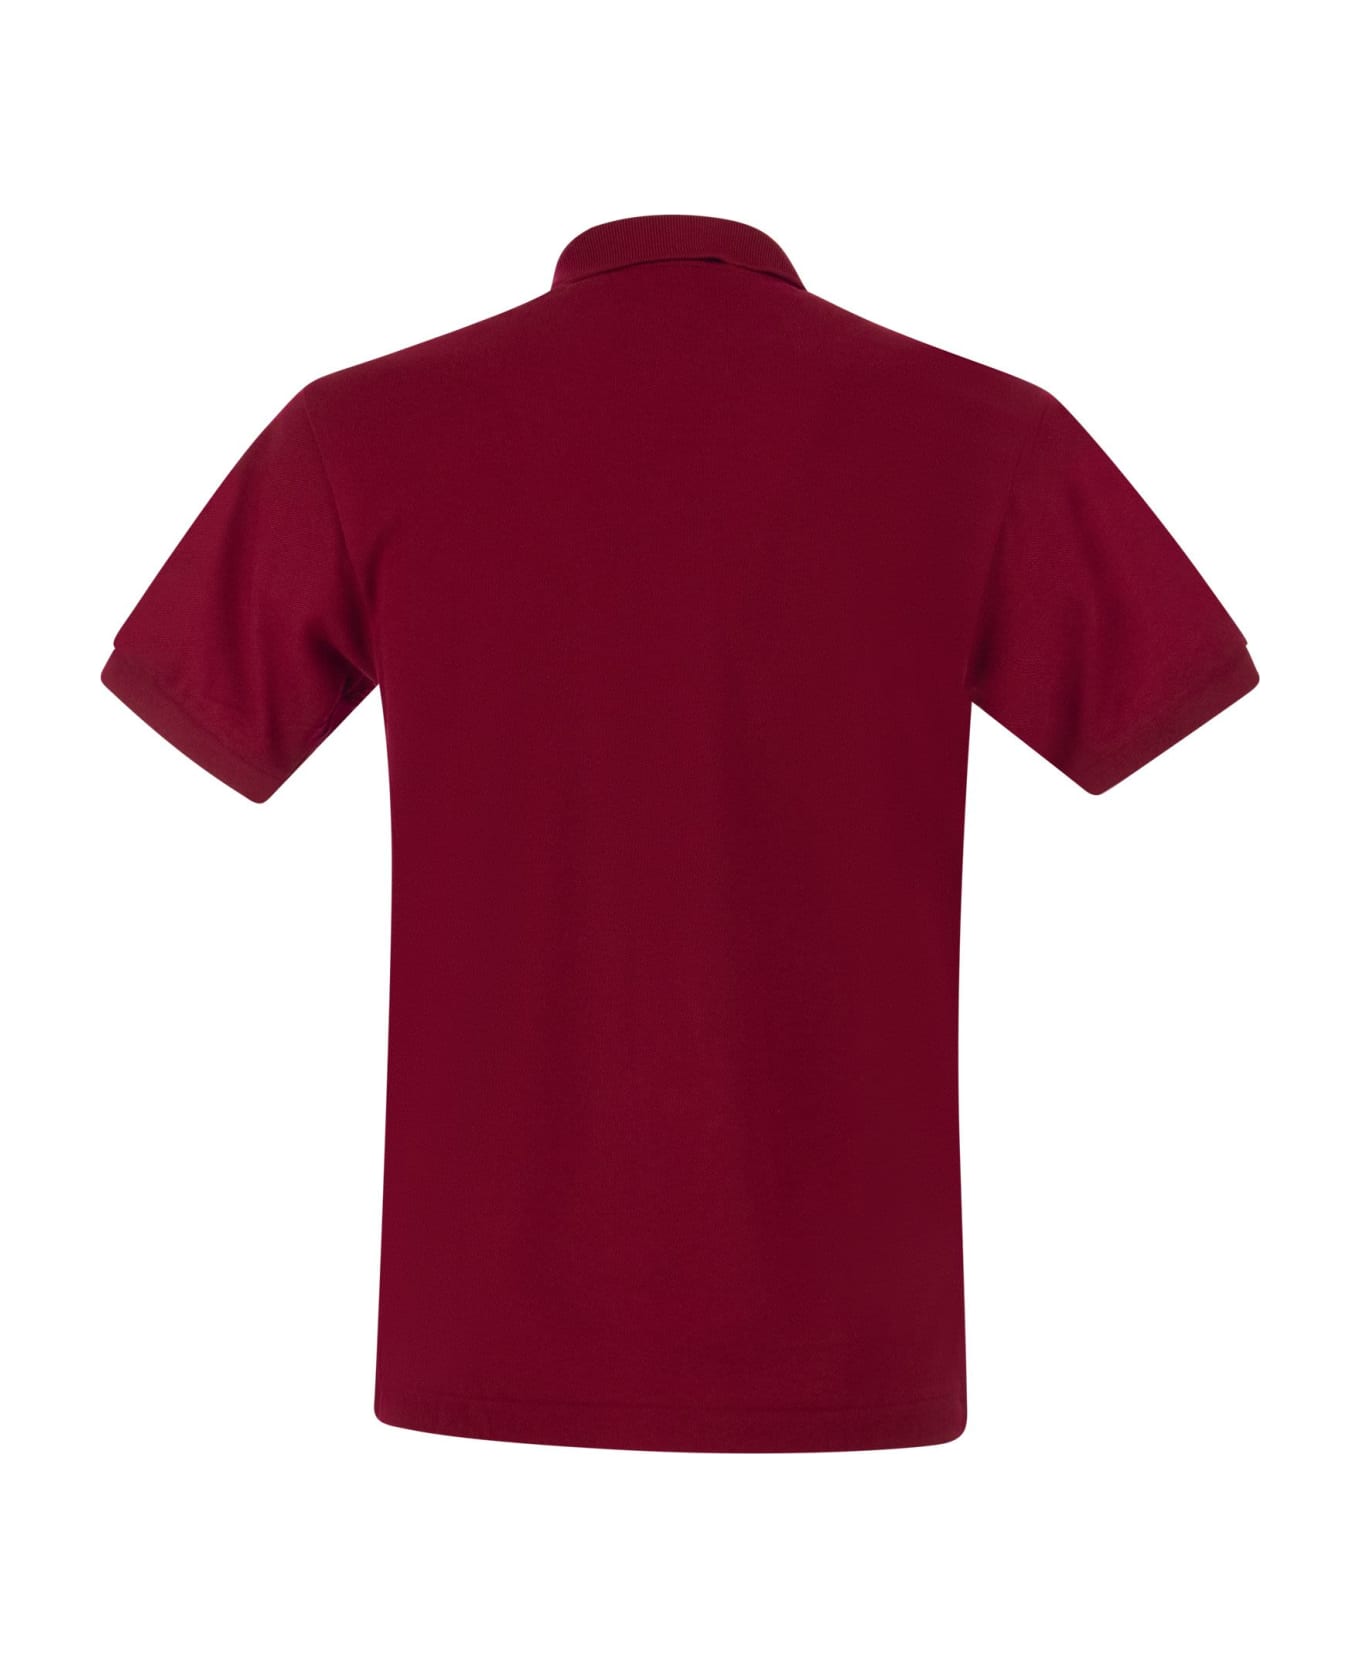 Lacoste Classic Fit Cotton Pique Polo Shirt - Bordeaux